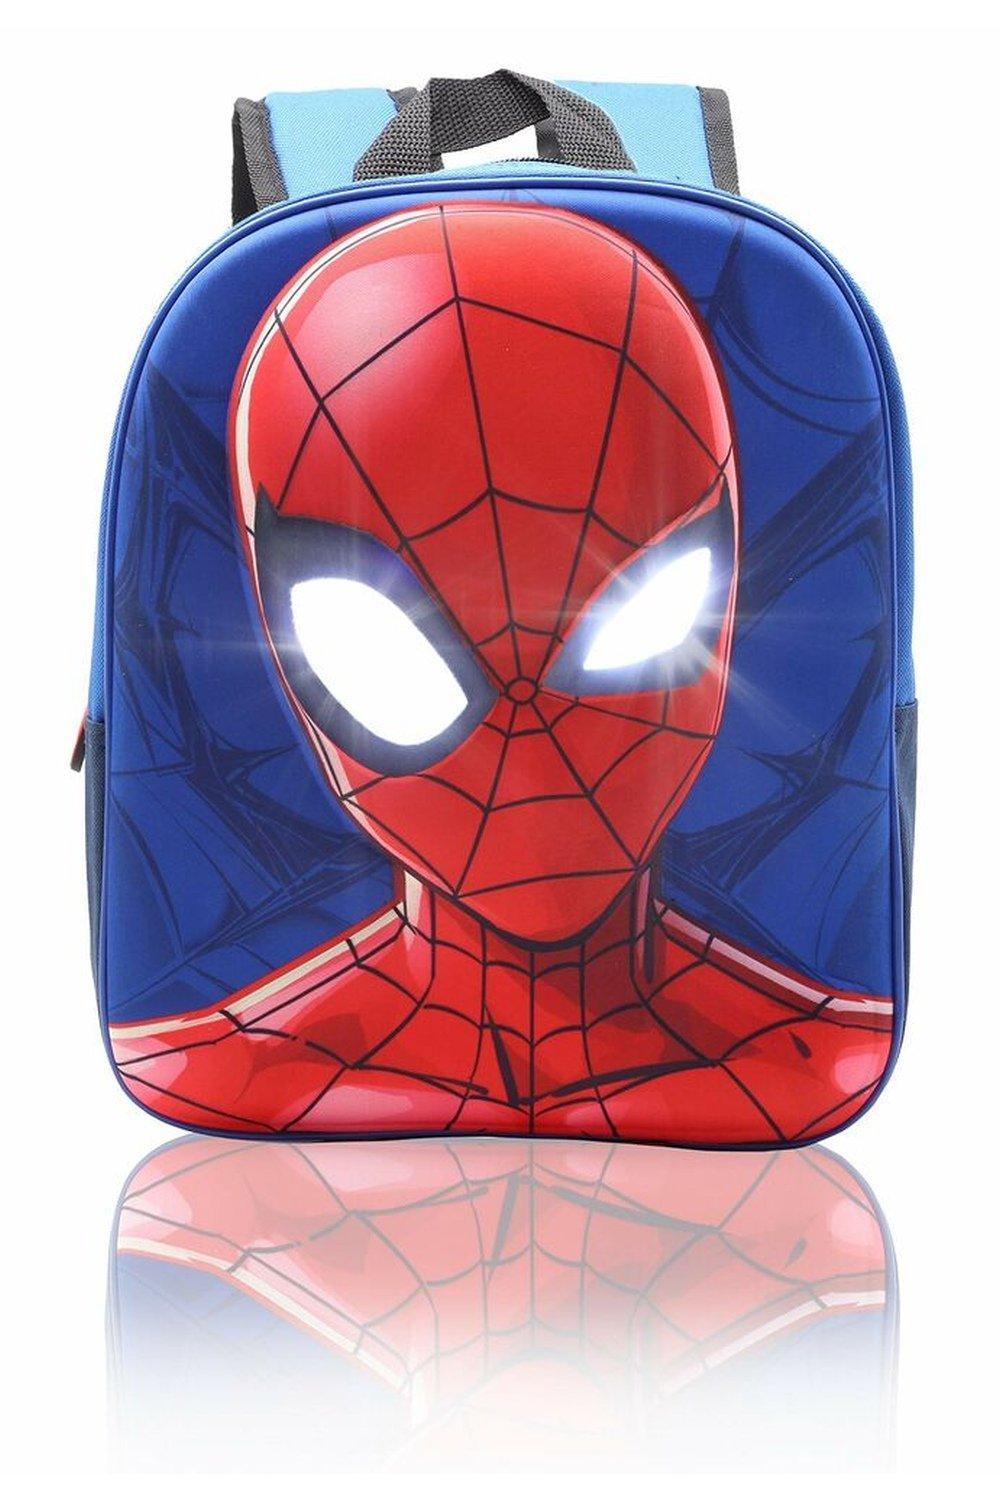 Рюкзак Человека-паука с подсветкой глаз Marvel, синий dogecoin школьная сумка рюкзак детский мини рюкзак 12 дюймов детский сад мультфильмы школьная сумка mochila